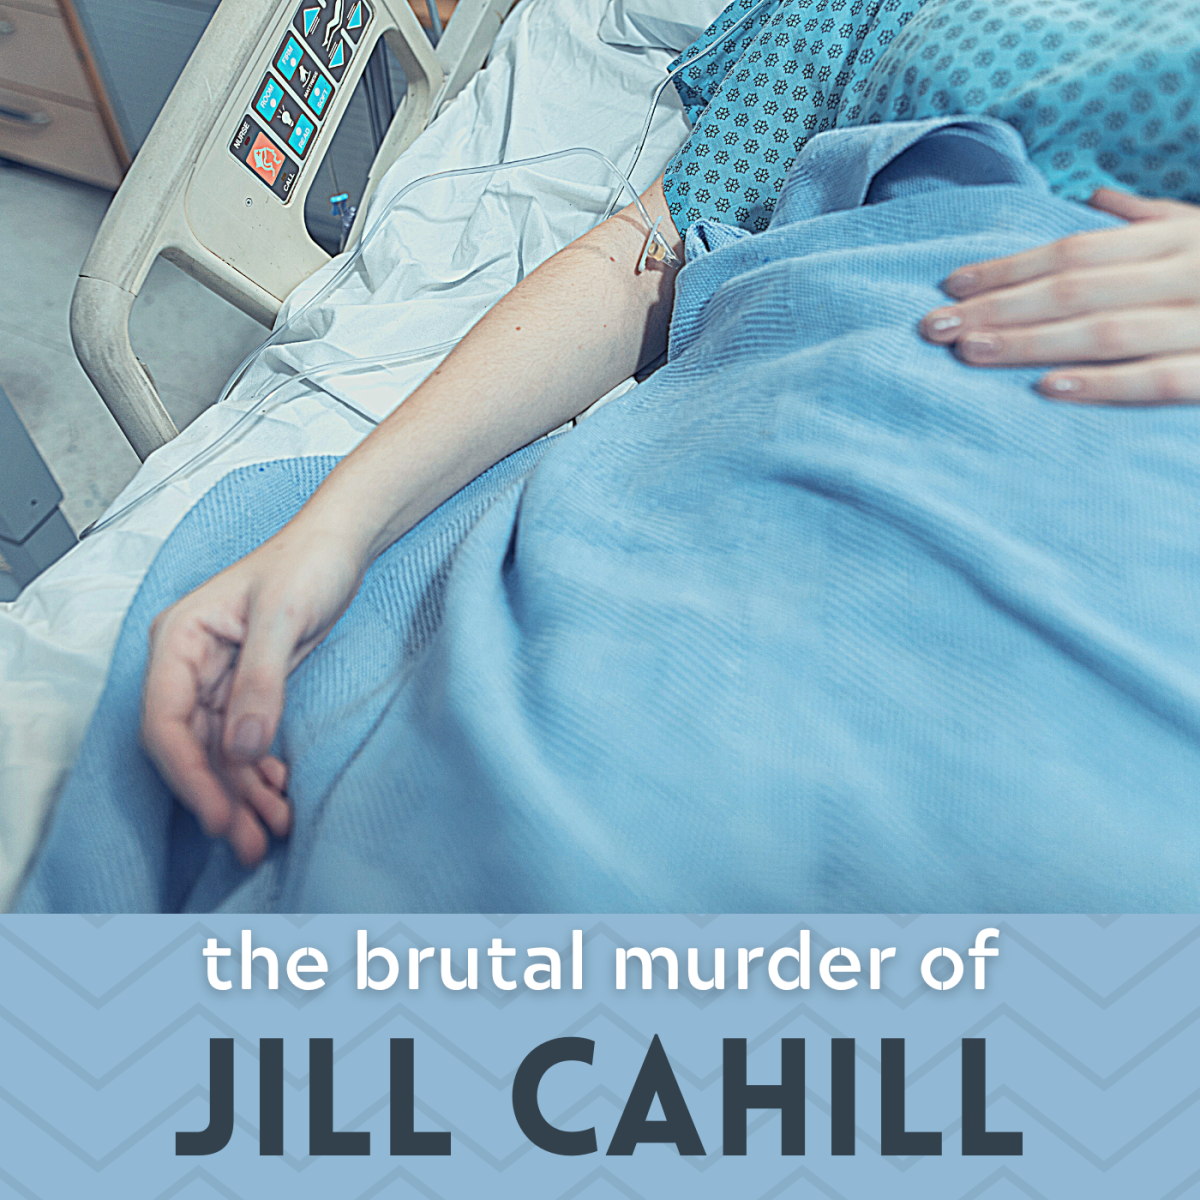 The Brutal Murder of Jill Cahill